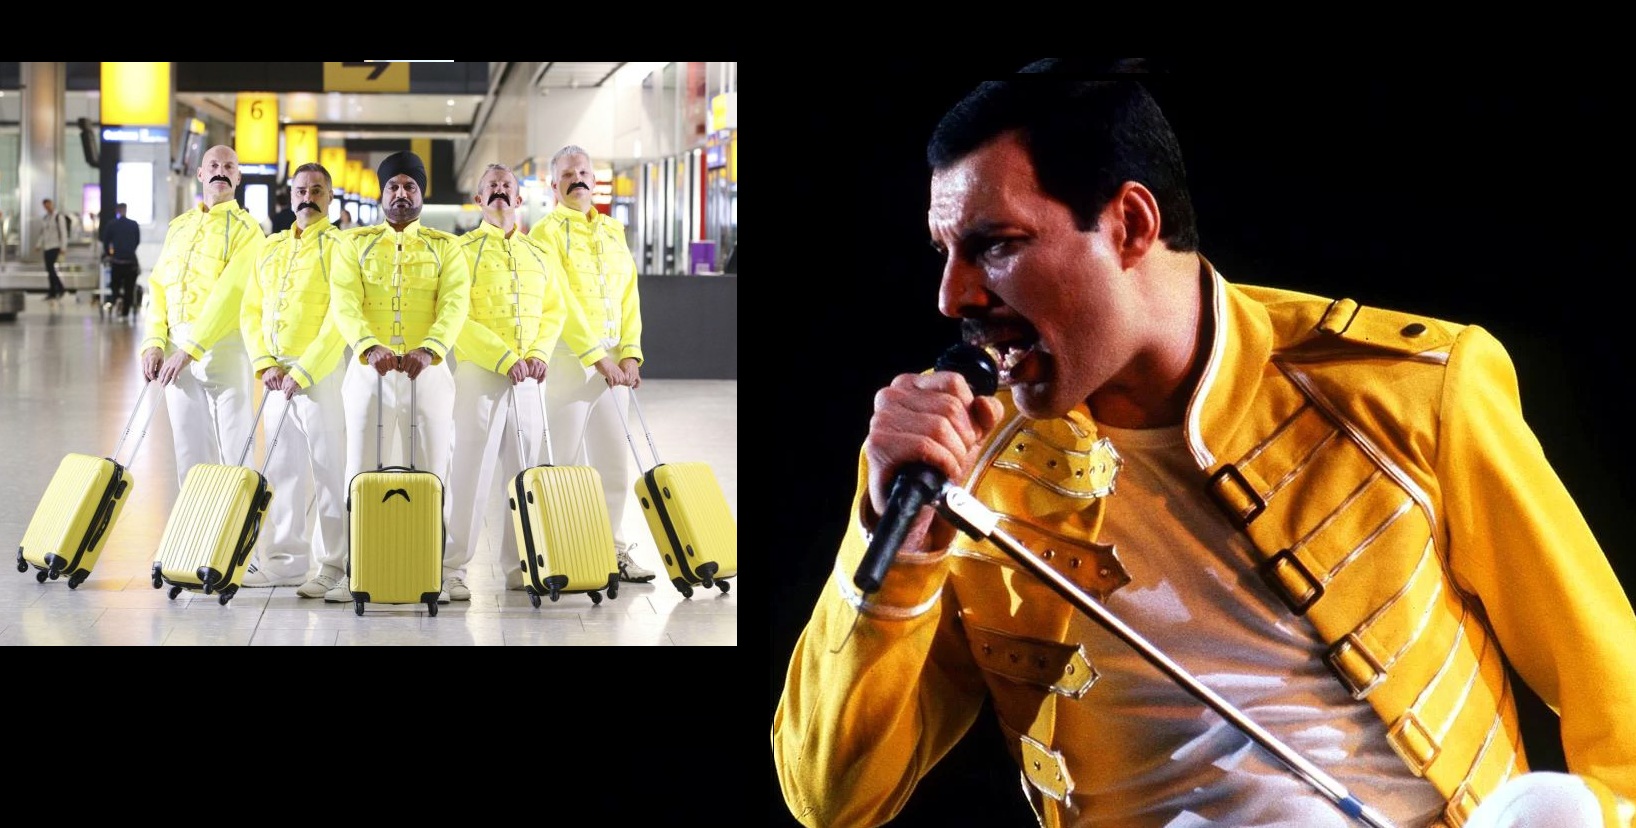 Mirá a los maleteros del aeropuerto Londres en un cover de Queen